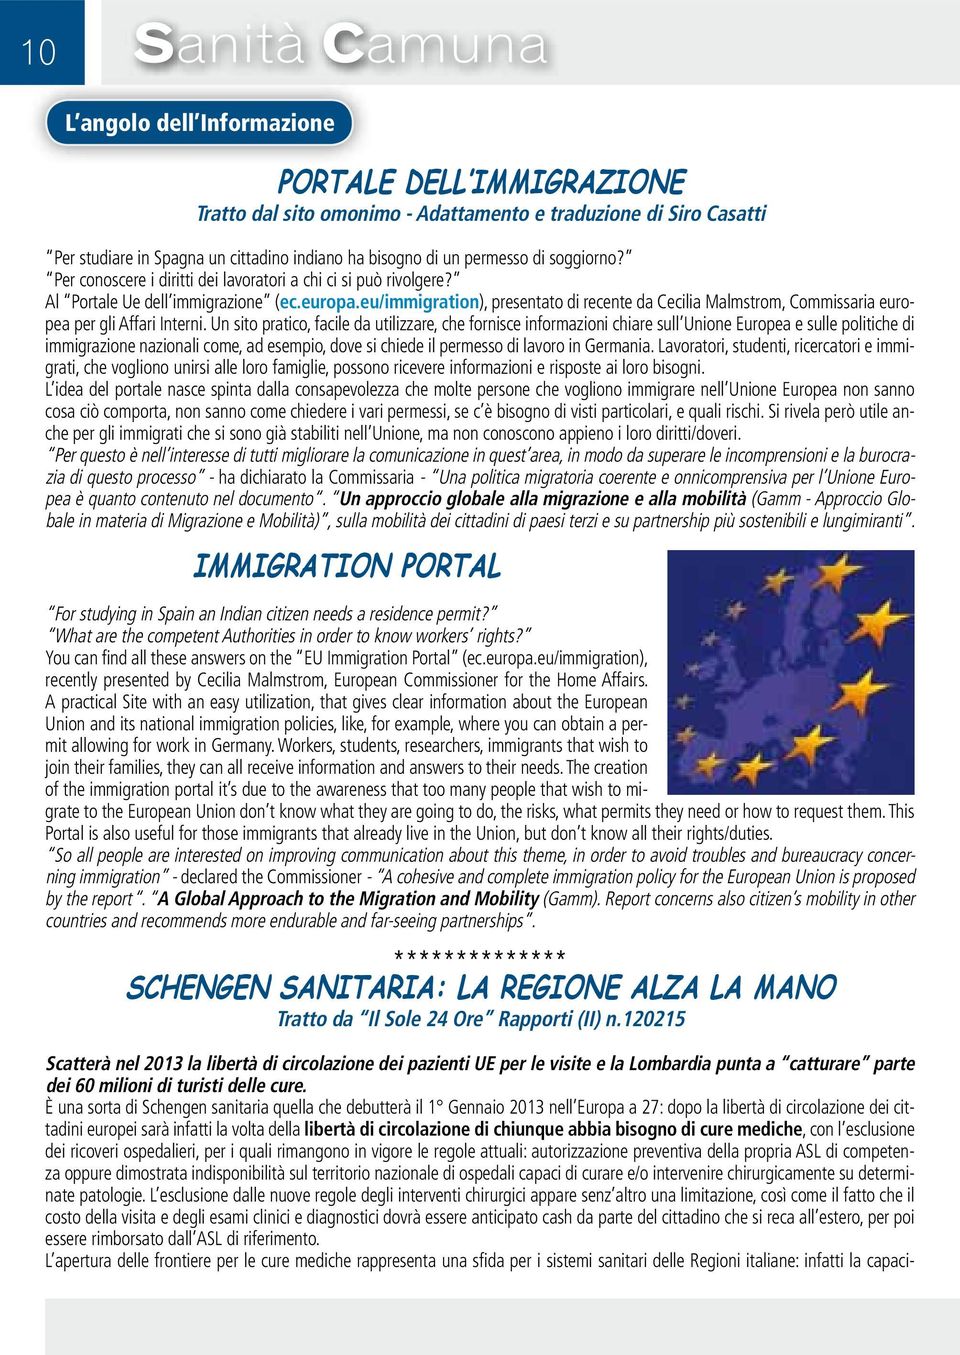 eu/immigration), presentato di recente da Cecilia Malmstrom, Commissaria europea per gli Affari Interni.